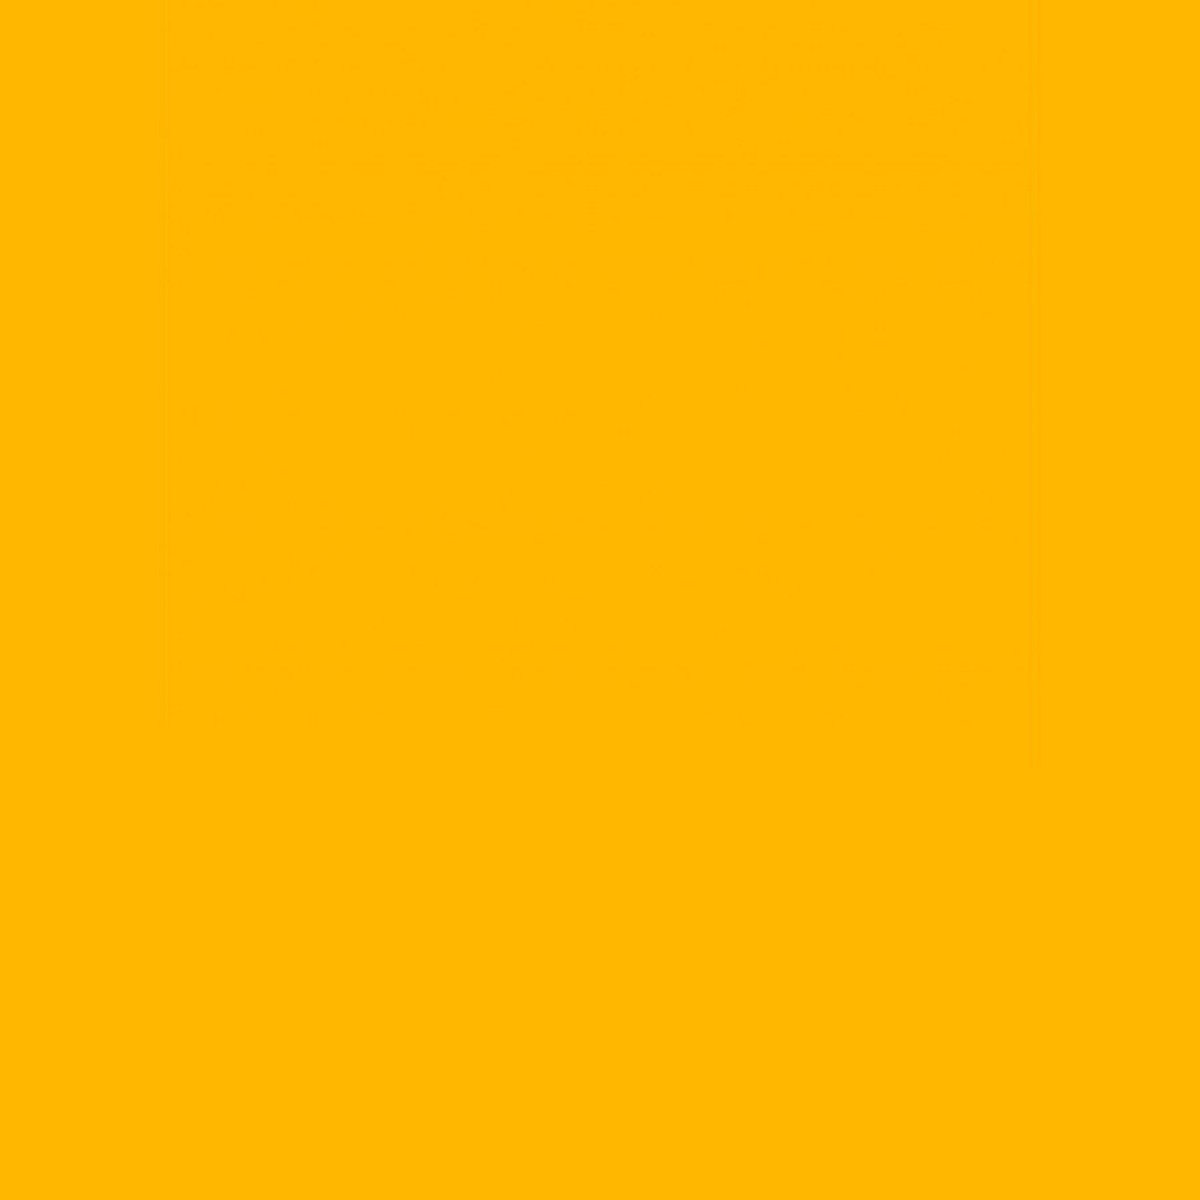 Saffron yellow drape